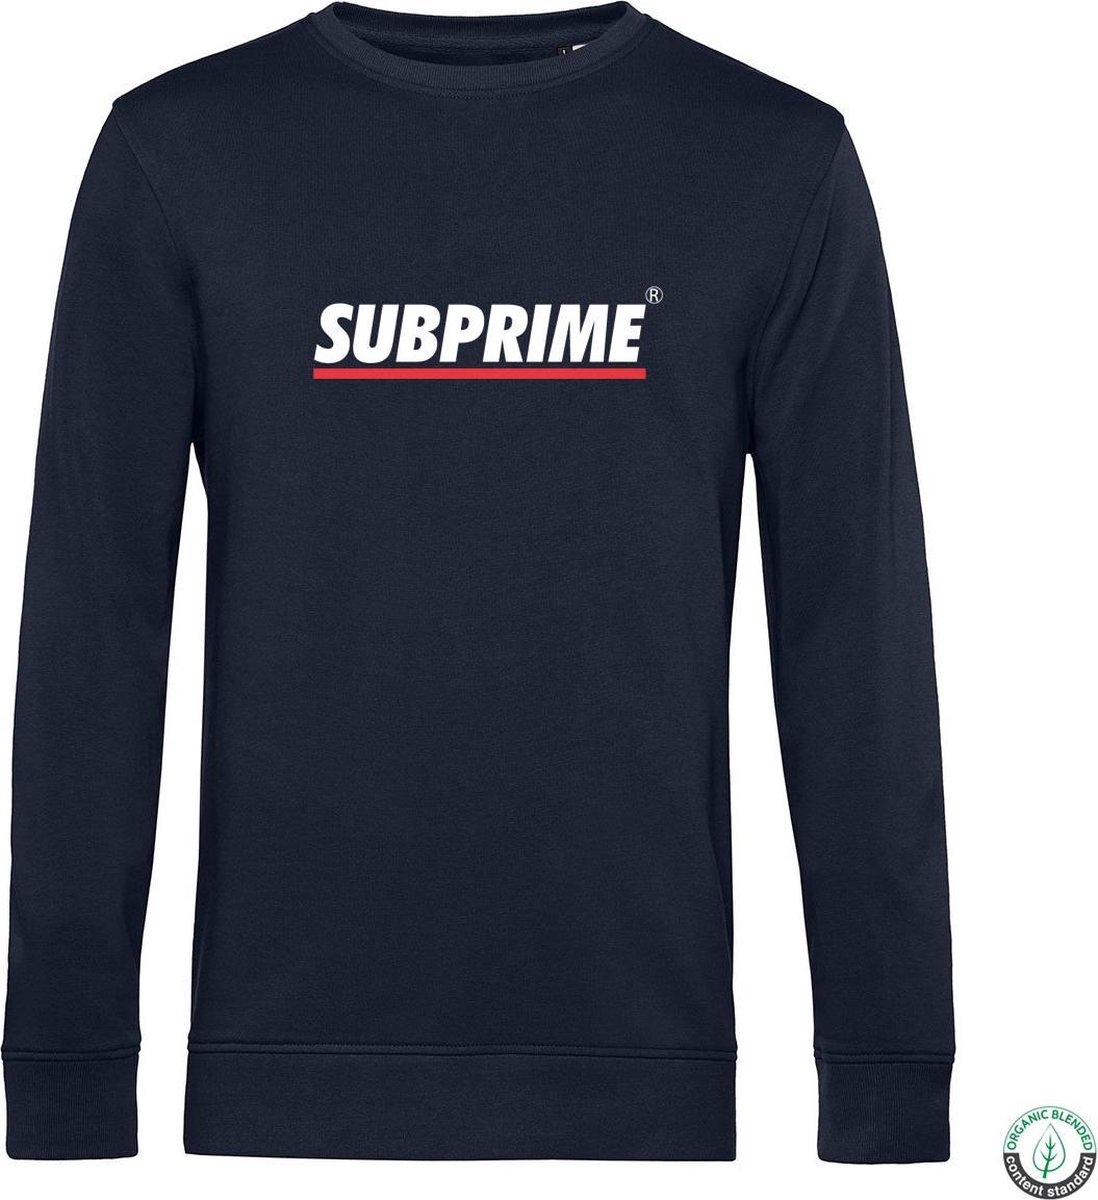 Subprime - Heren Sweaters Sweater Stripe Navy - Blauw - Maat M